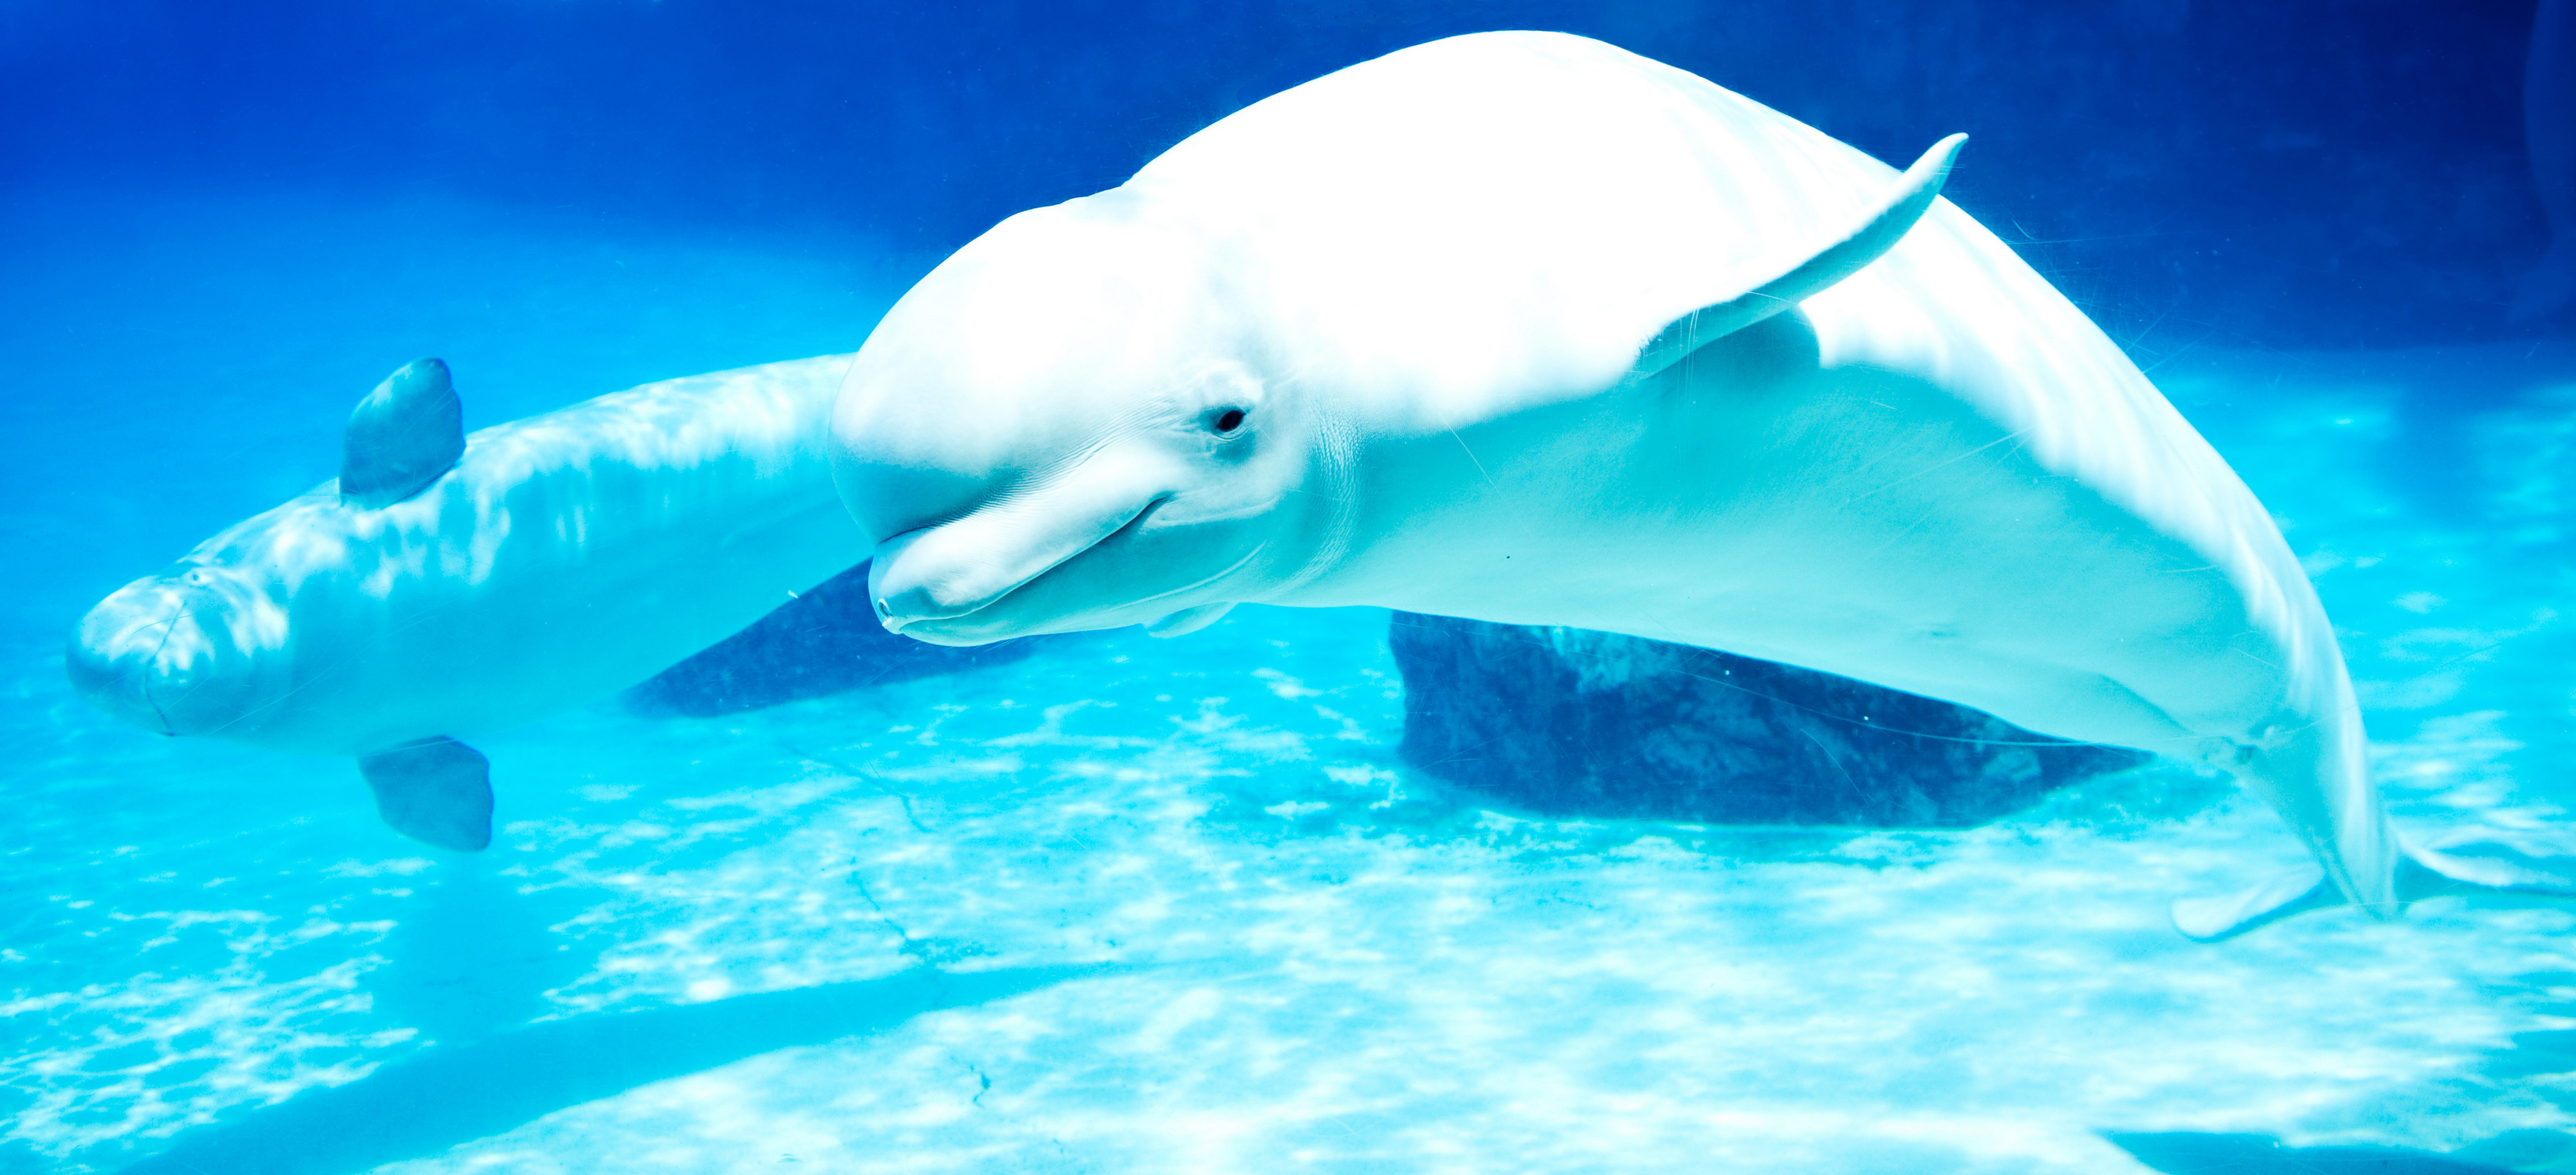 تصاویر با کیفیت بالا از دلفین سفید رنگ برای پس زمینه ویندوز